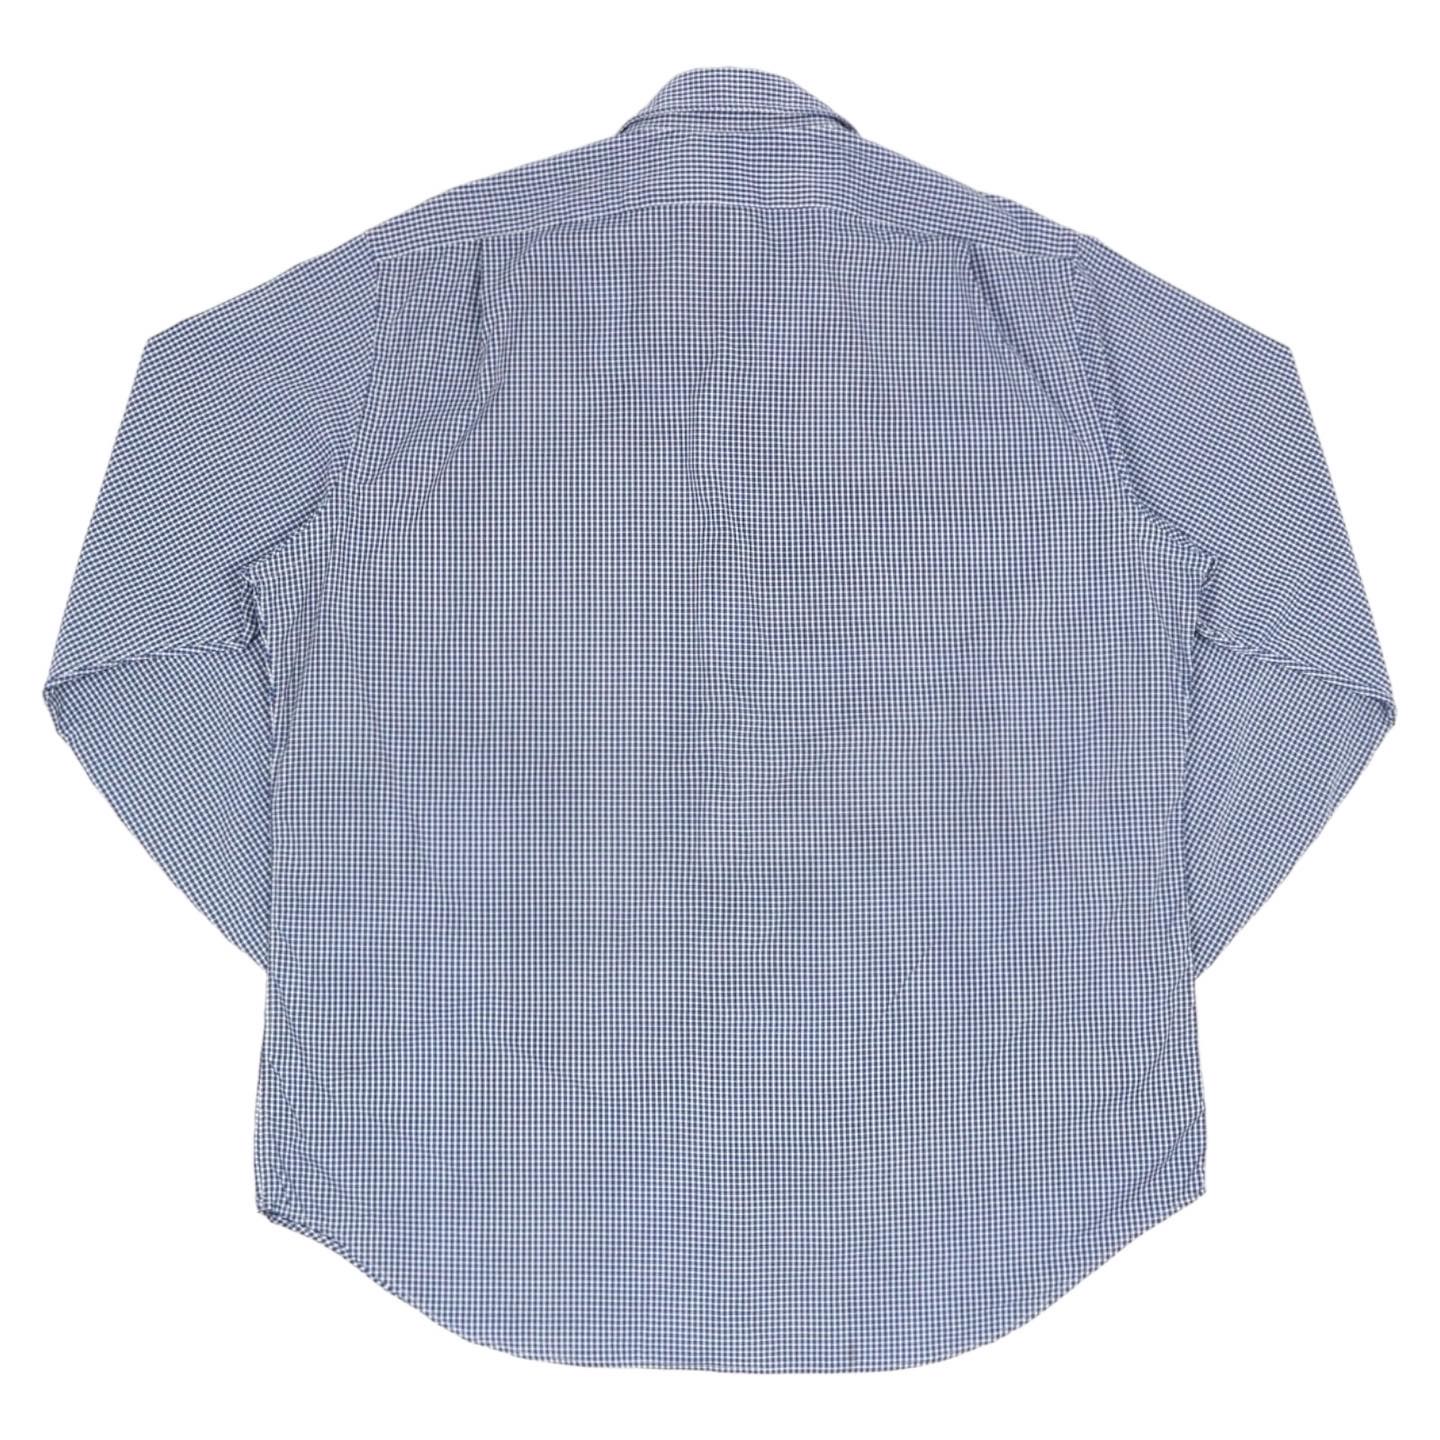 Polo by Ralph Lauren Shirt Size XL